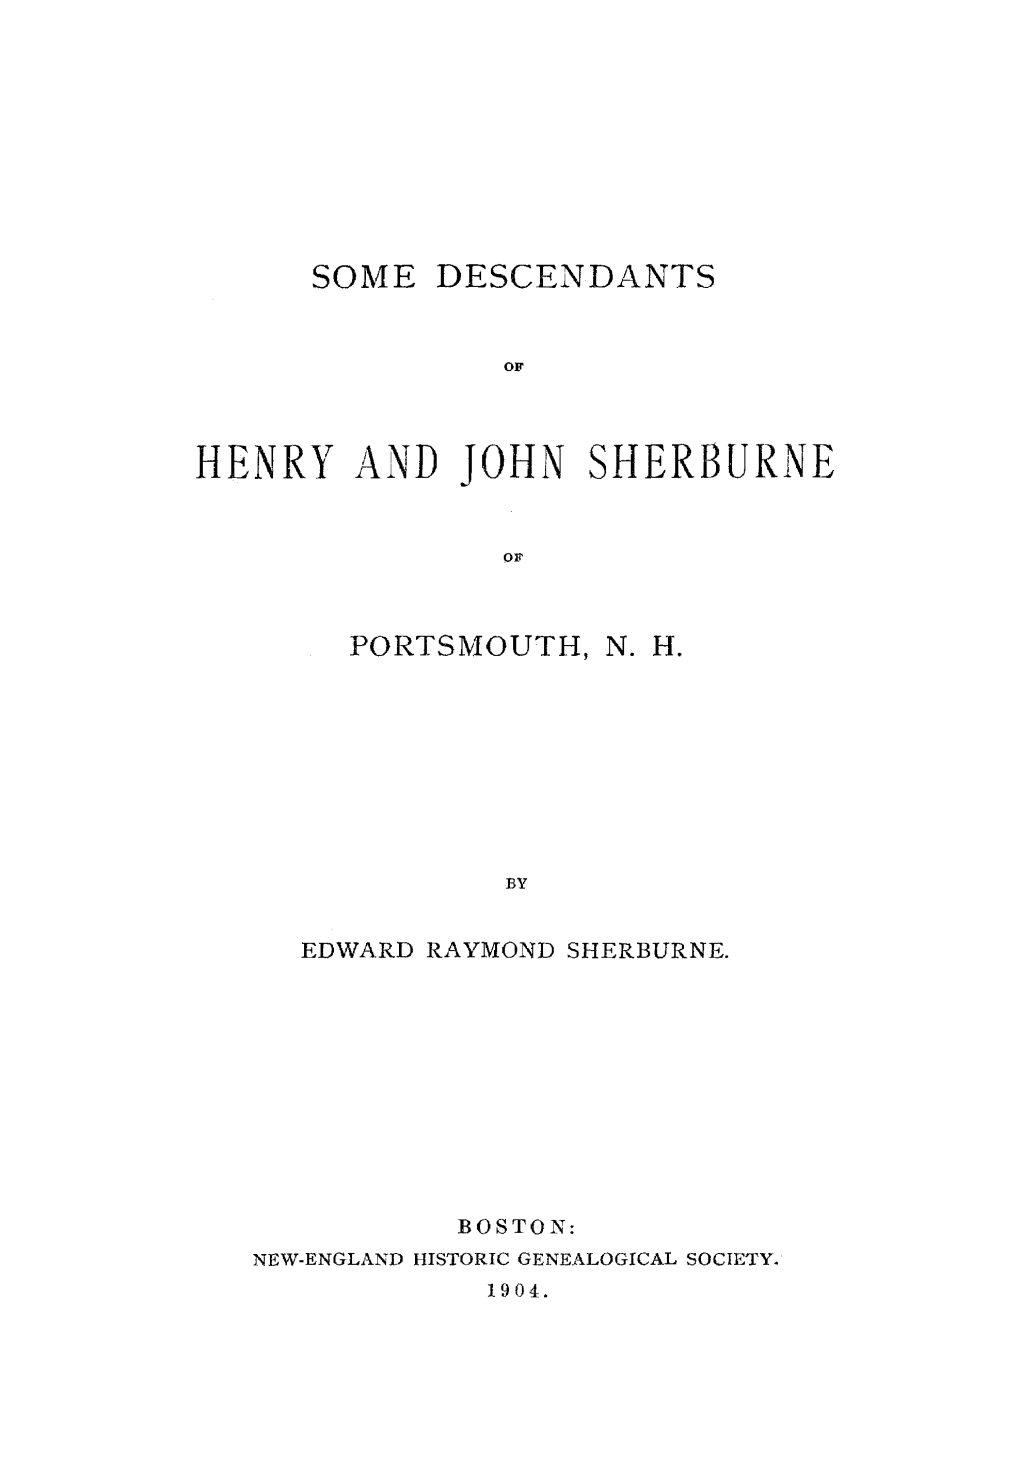 Henry and John Sherburne